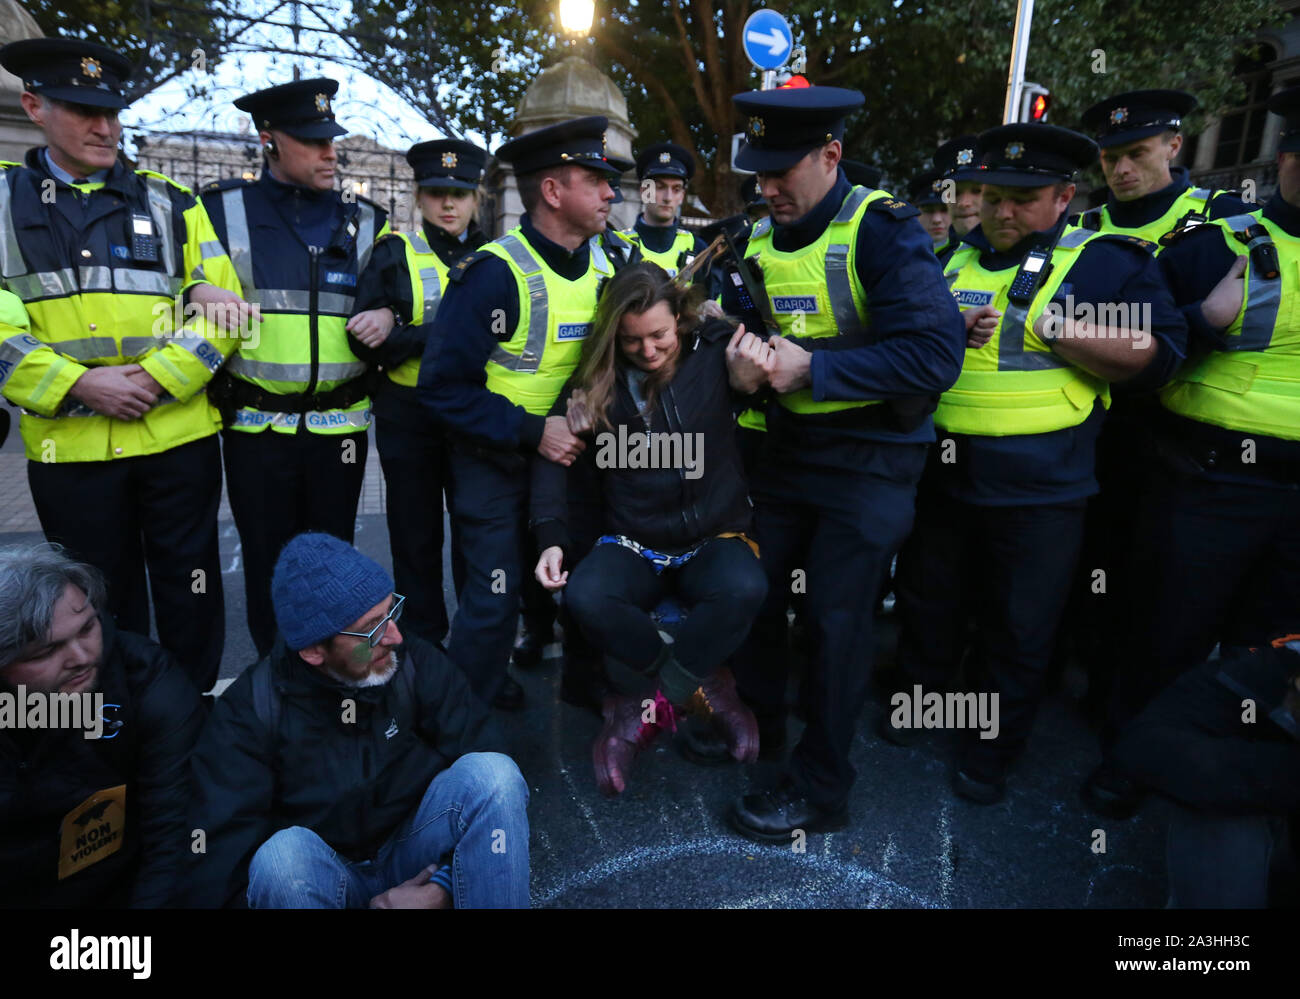 08/10/2019 giornata di bilancio 2020 proteste. Nella foto, i membri di un garda Siochana inizia ad arrestare i membri di estinzione della ribellione che protestano al di fuori del Dail su Leinster Street. Fotografia: Sam Boal / RollingNews.ie Foto Stock